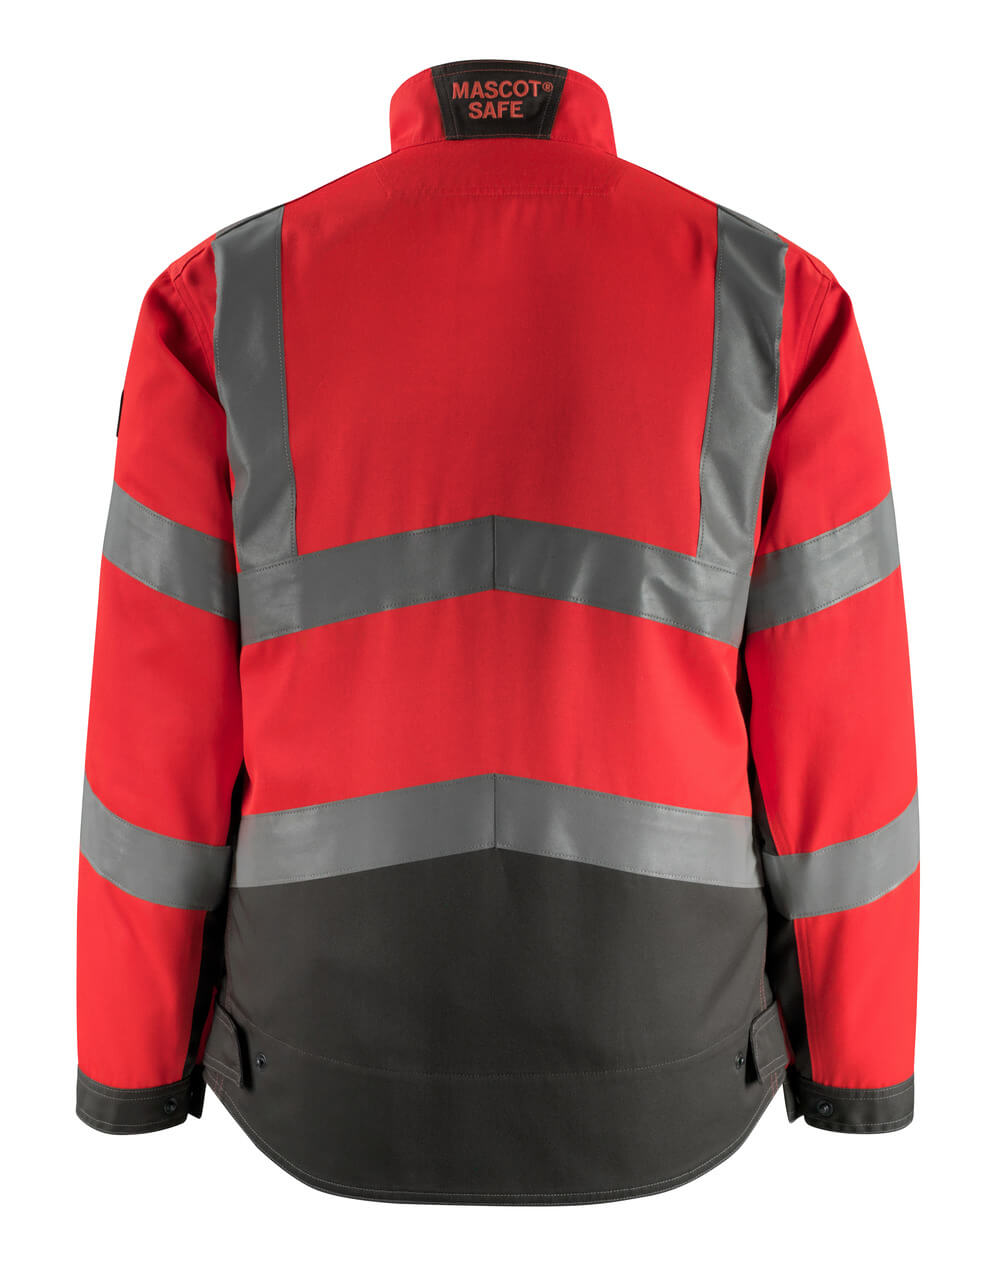 Mascot SAFE SUPREME  Oxford Jacket 15509 hi-vis red/dark anthracite